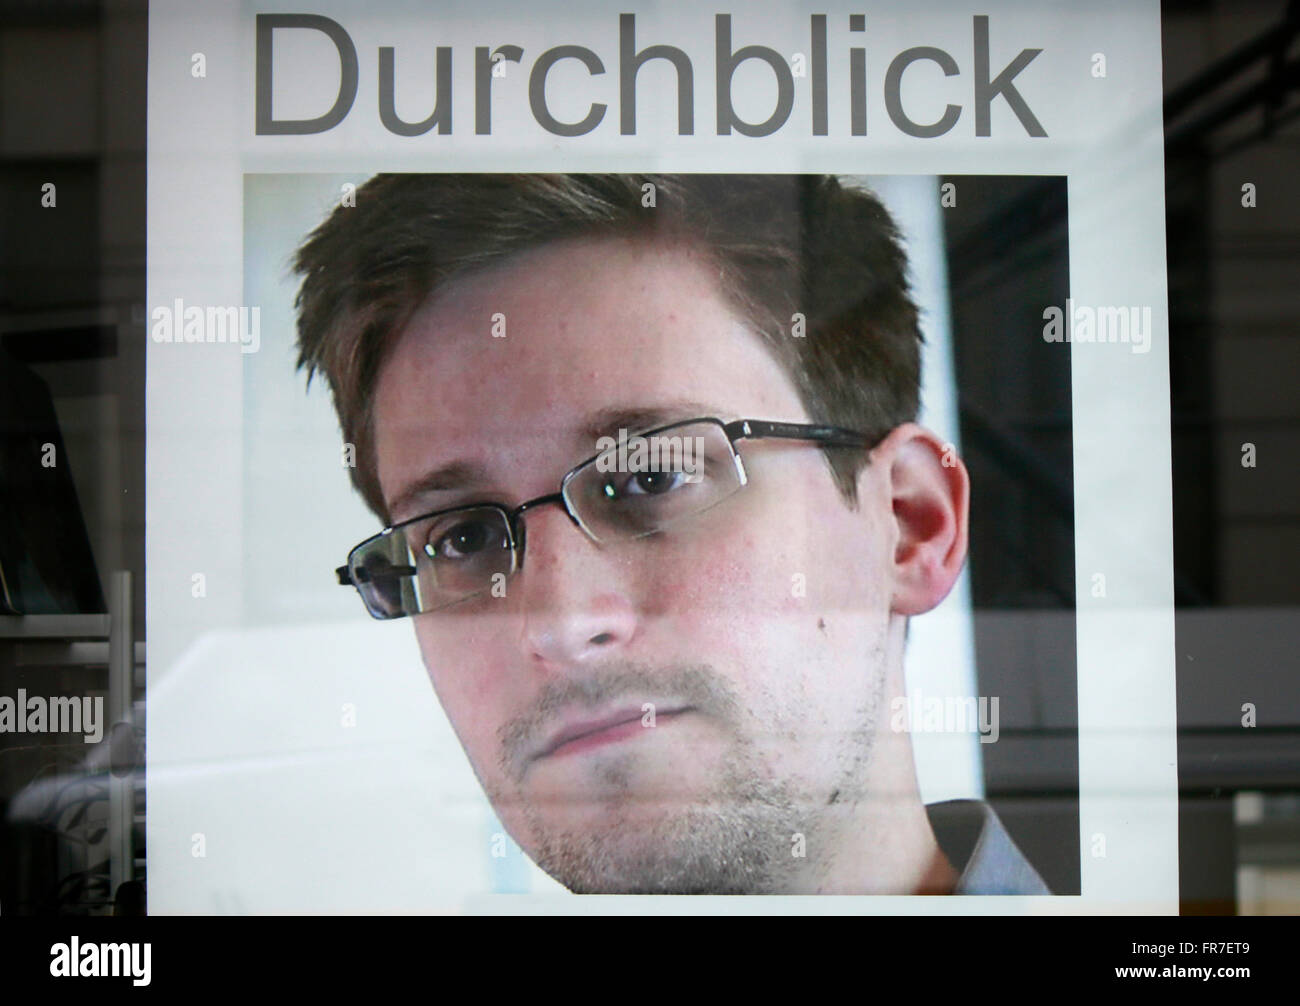 Werbung Fuer "Durchblick" Mit Dem Porträt von Edward Snowden, Berlin. Stockfoto